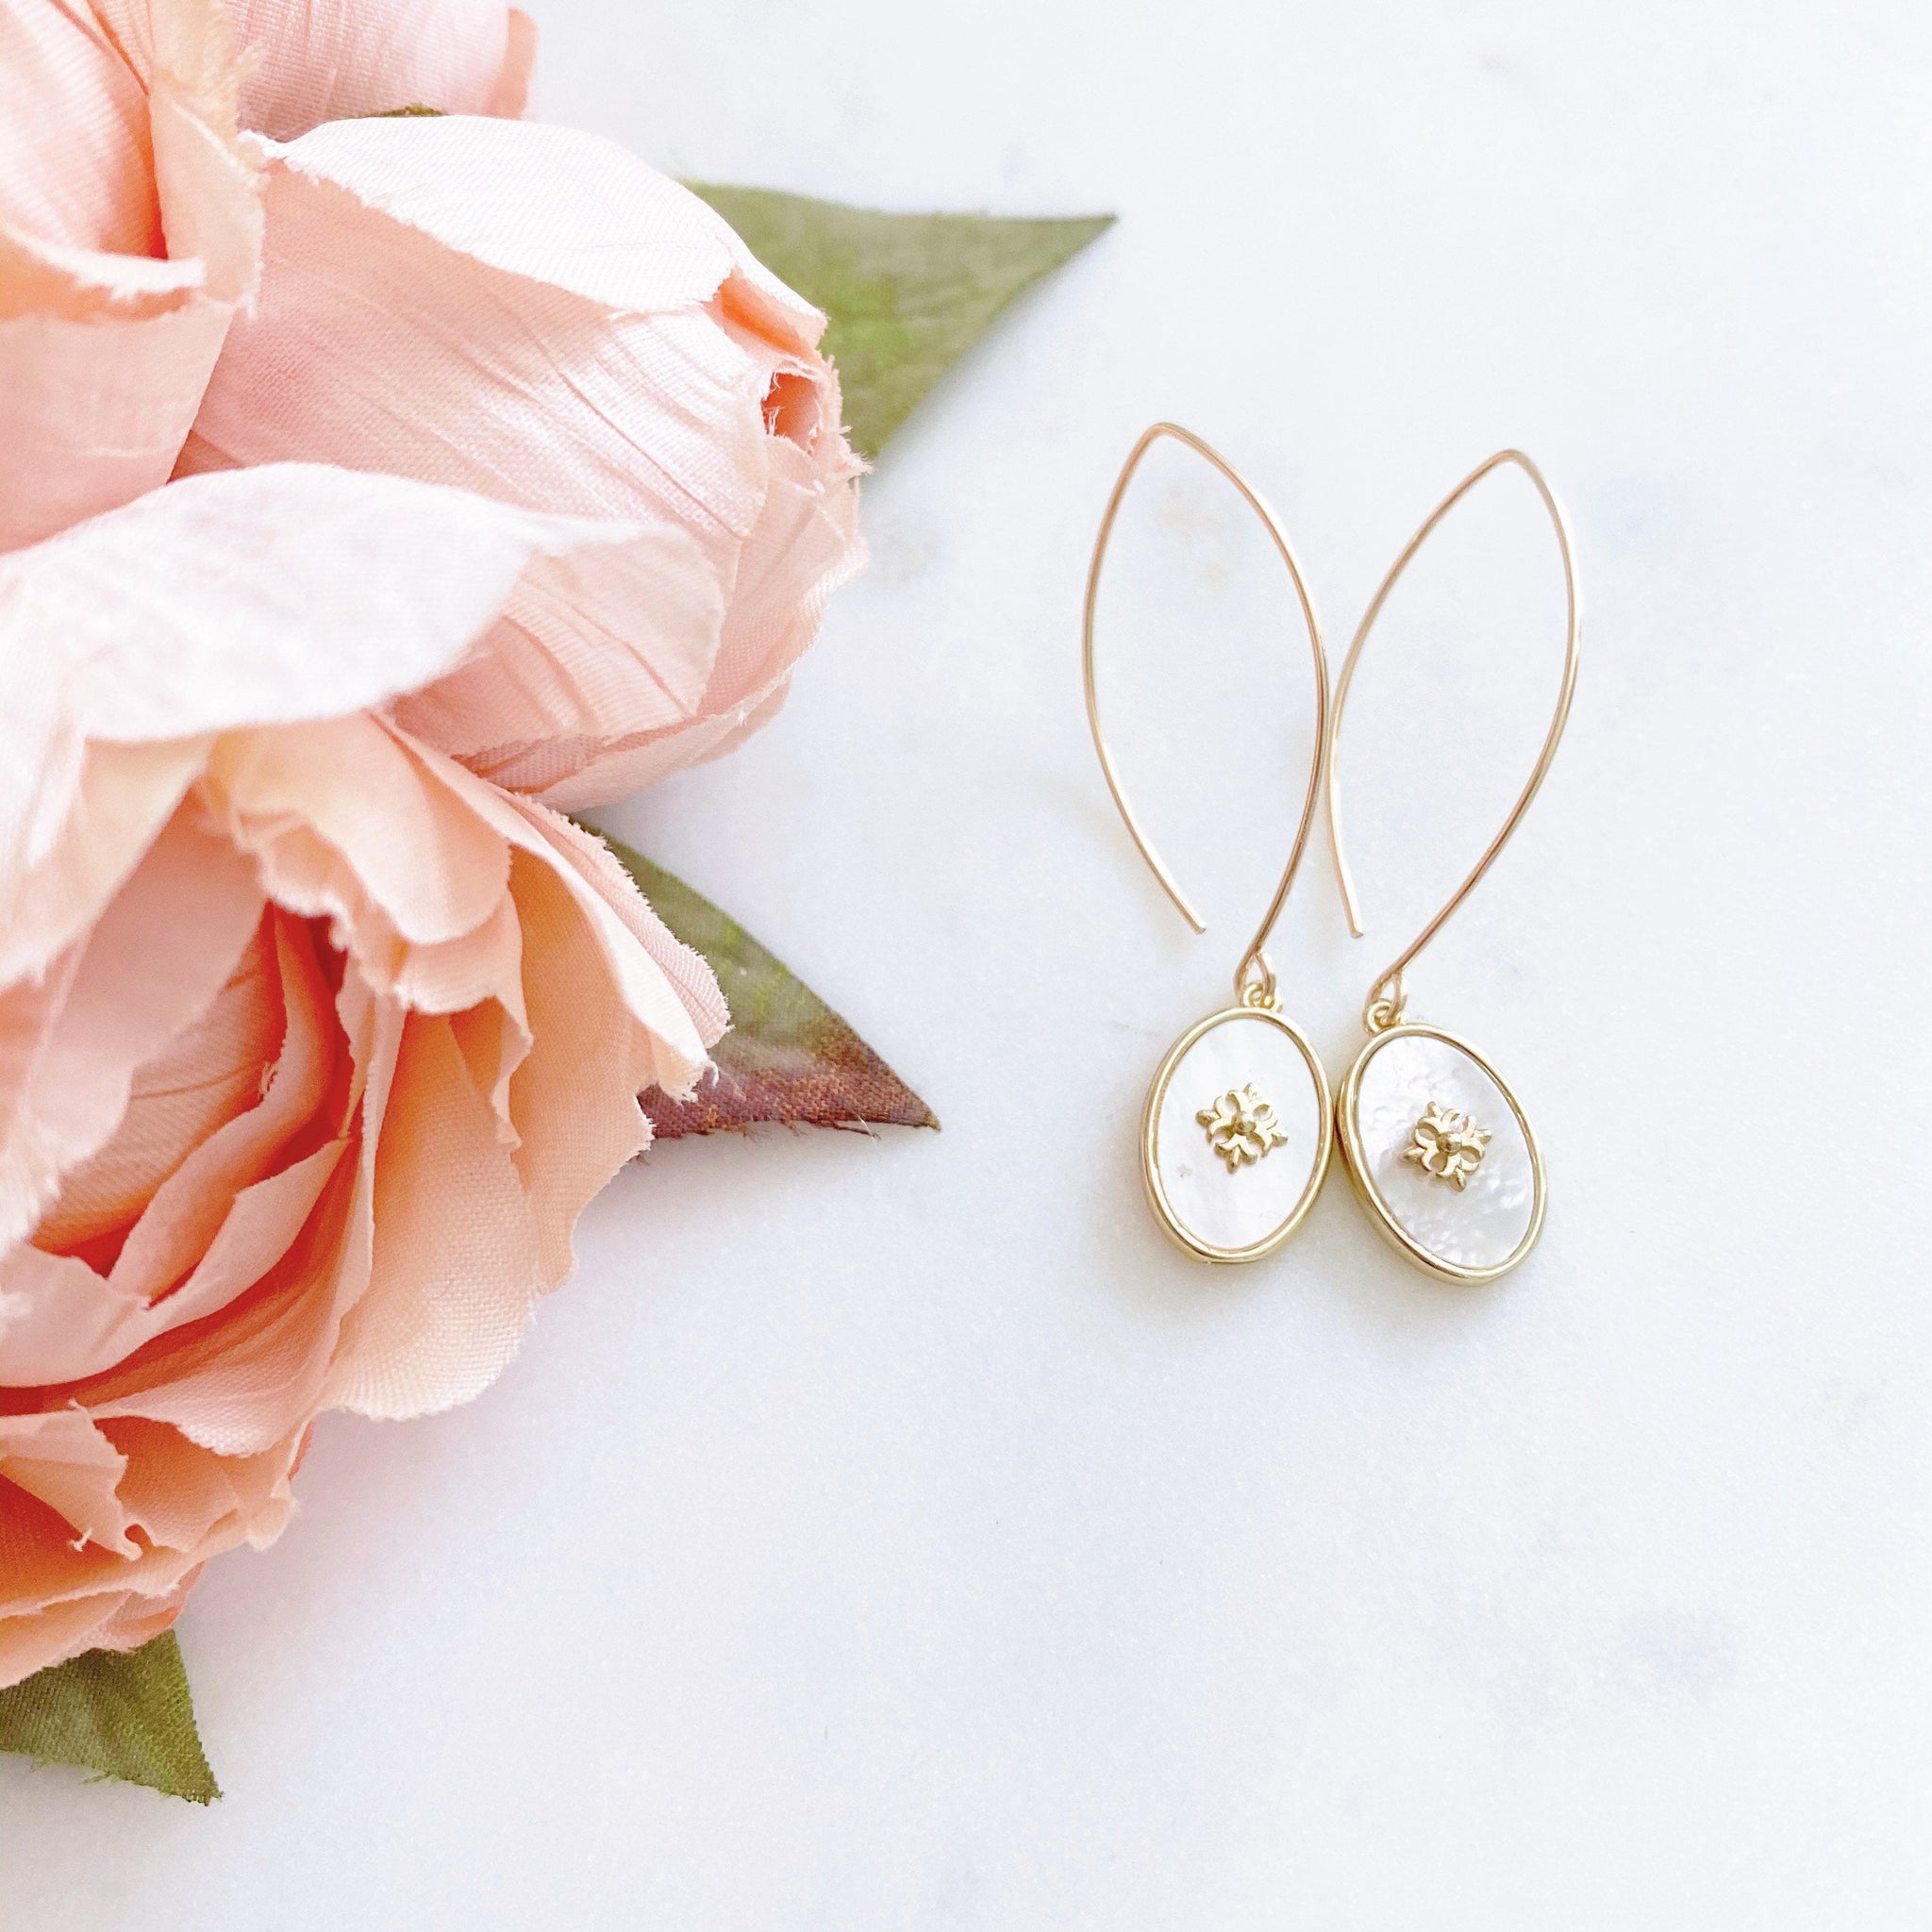 Mother Of Pearl Earrings, Fleur De Lis Earrings, Disc Earrings, Anniversary Gift for Wife, GRACE